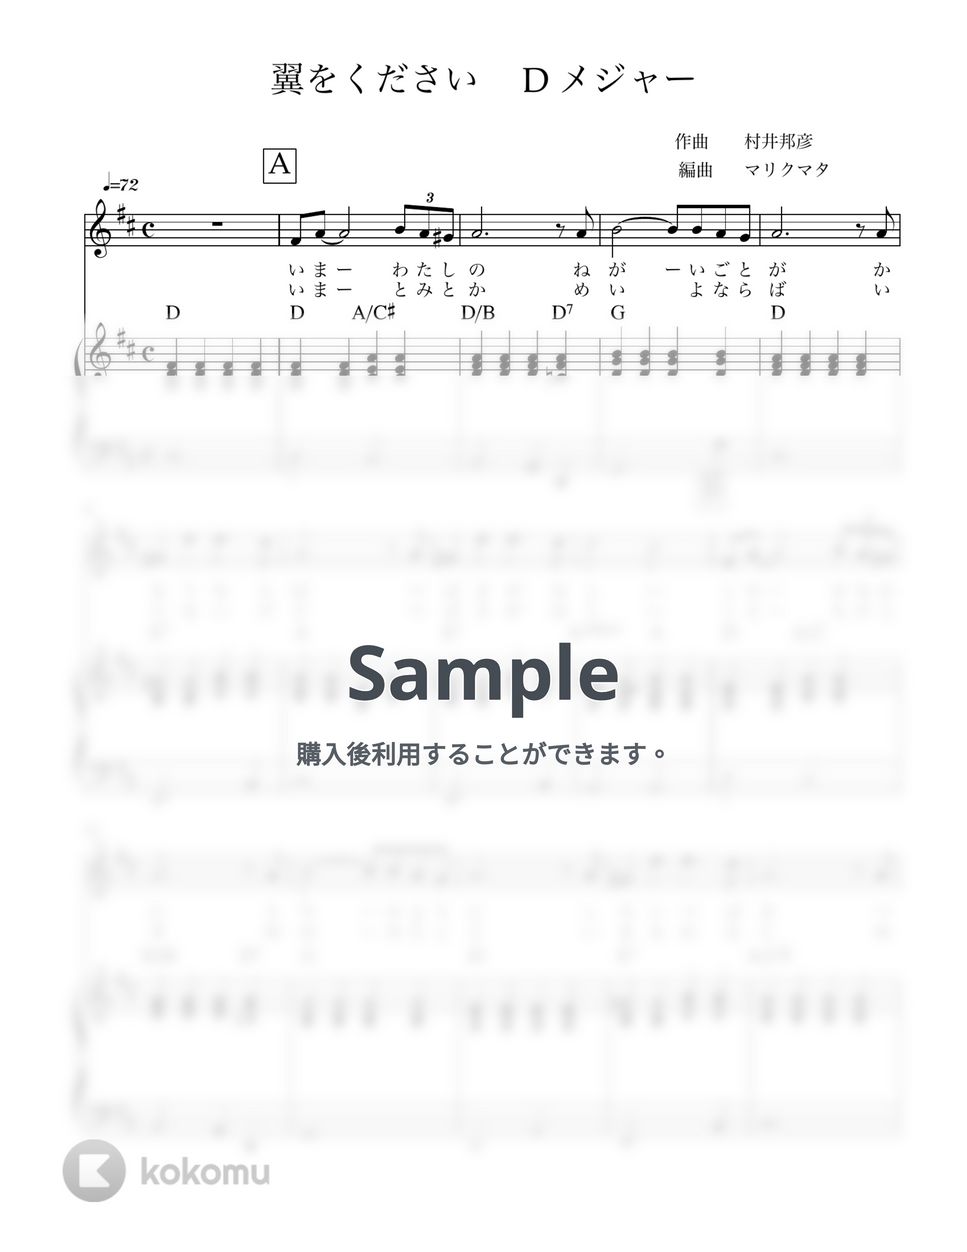 村井邦彦 - 翼をください(key in D) 歌とピアノ by マリクマタ